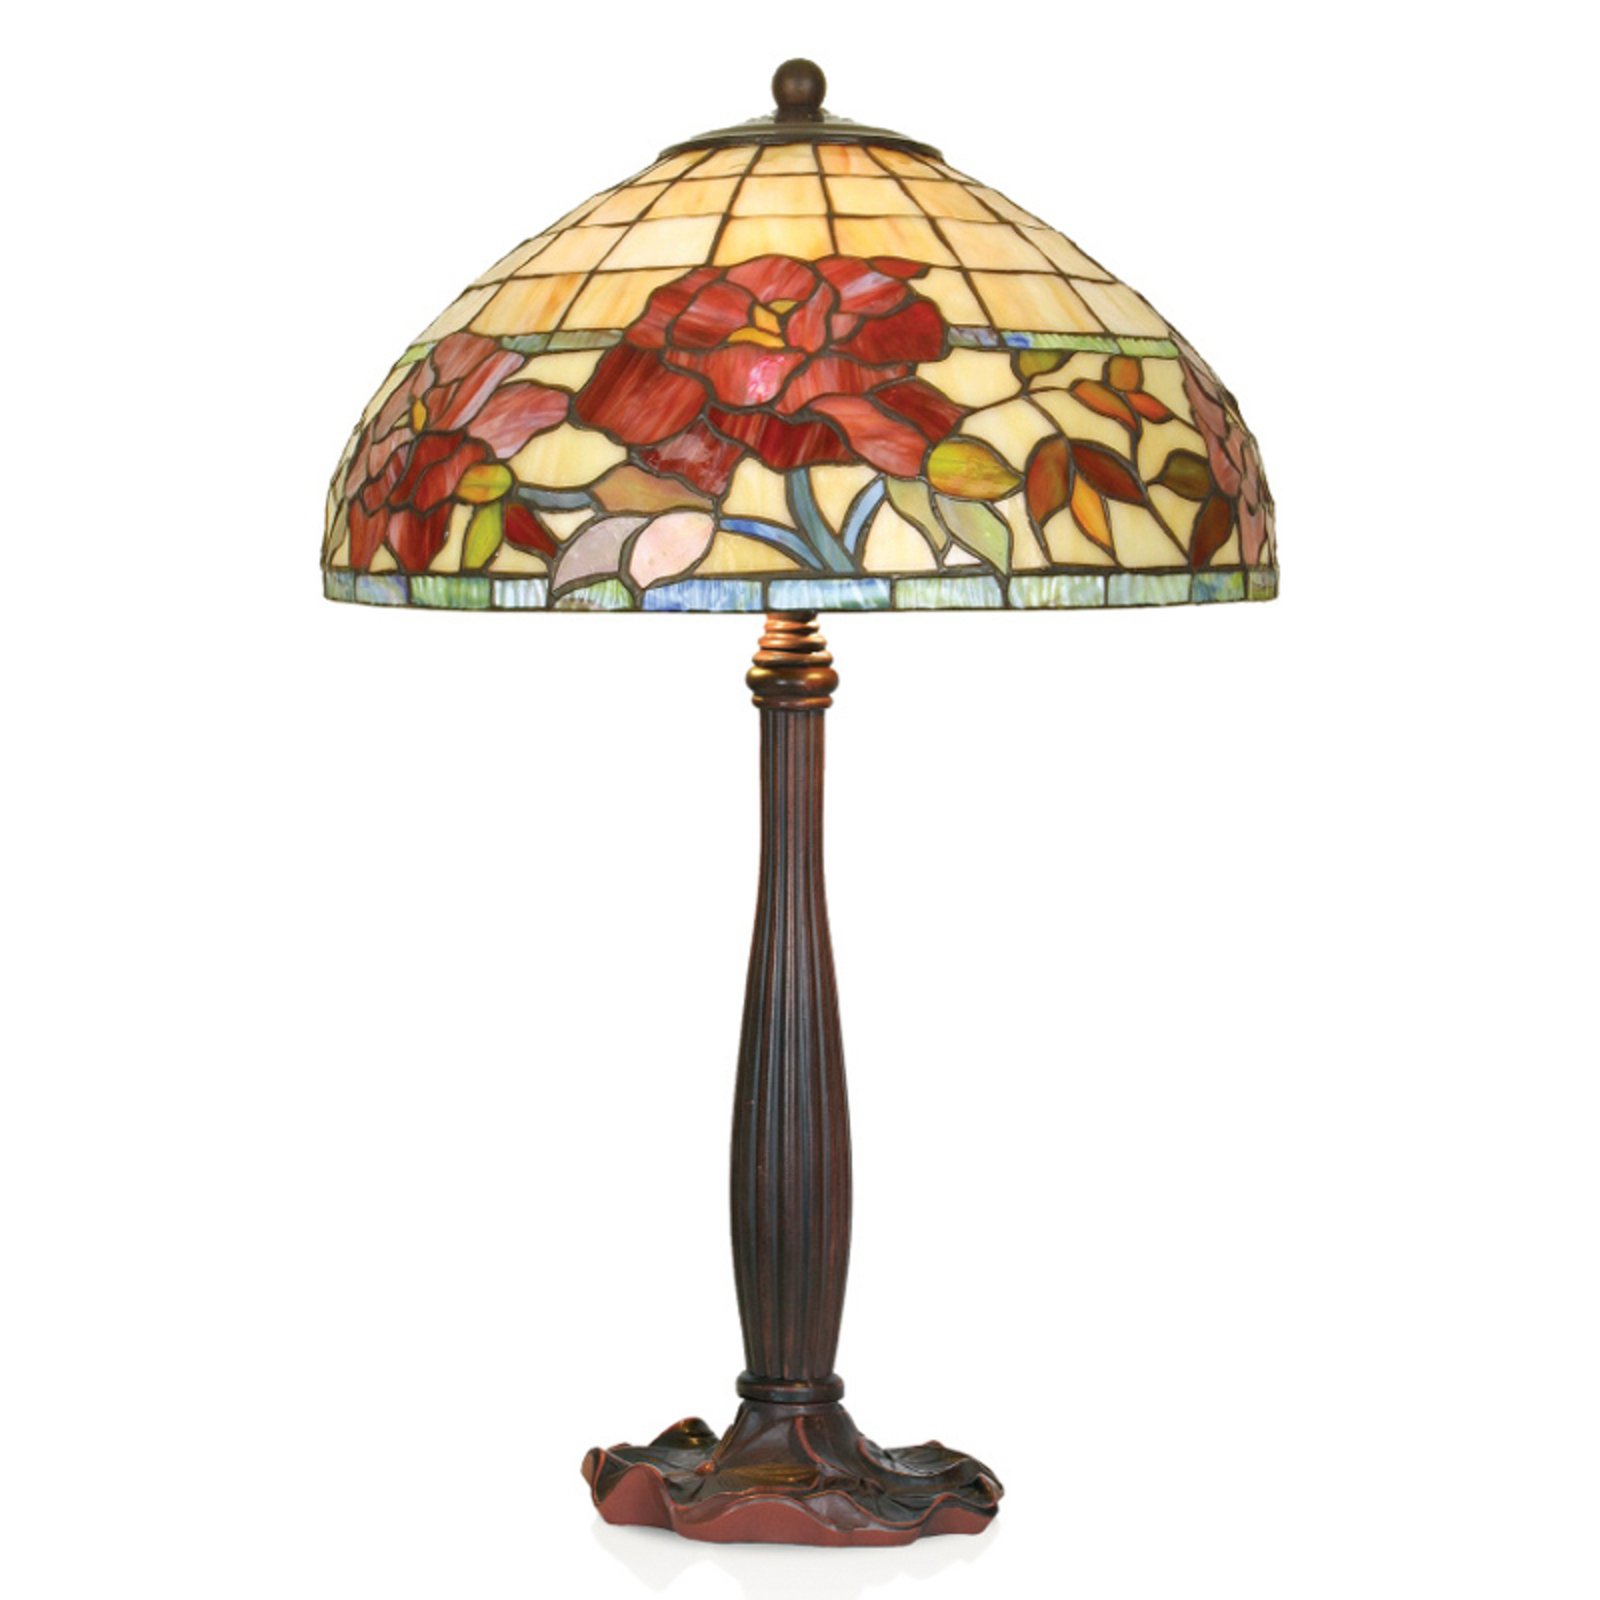 Ručno izrađena stolna lampa Esmee u Tiffany stilu